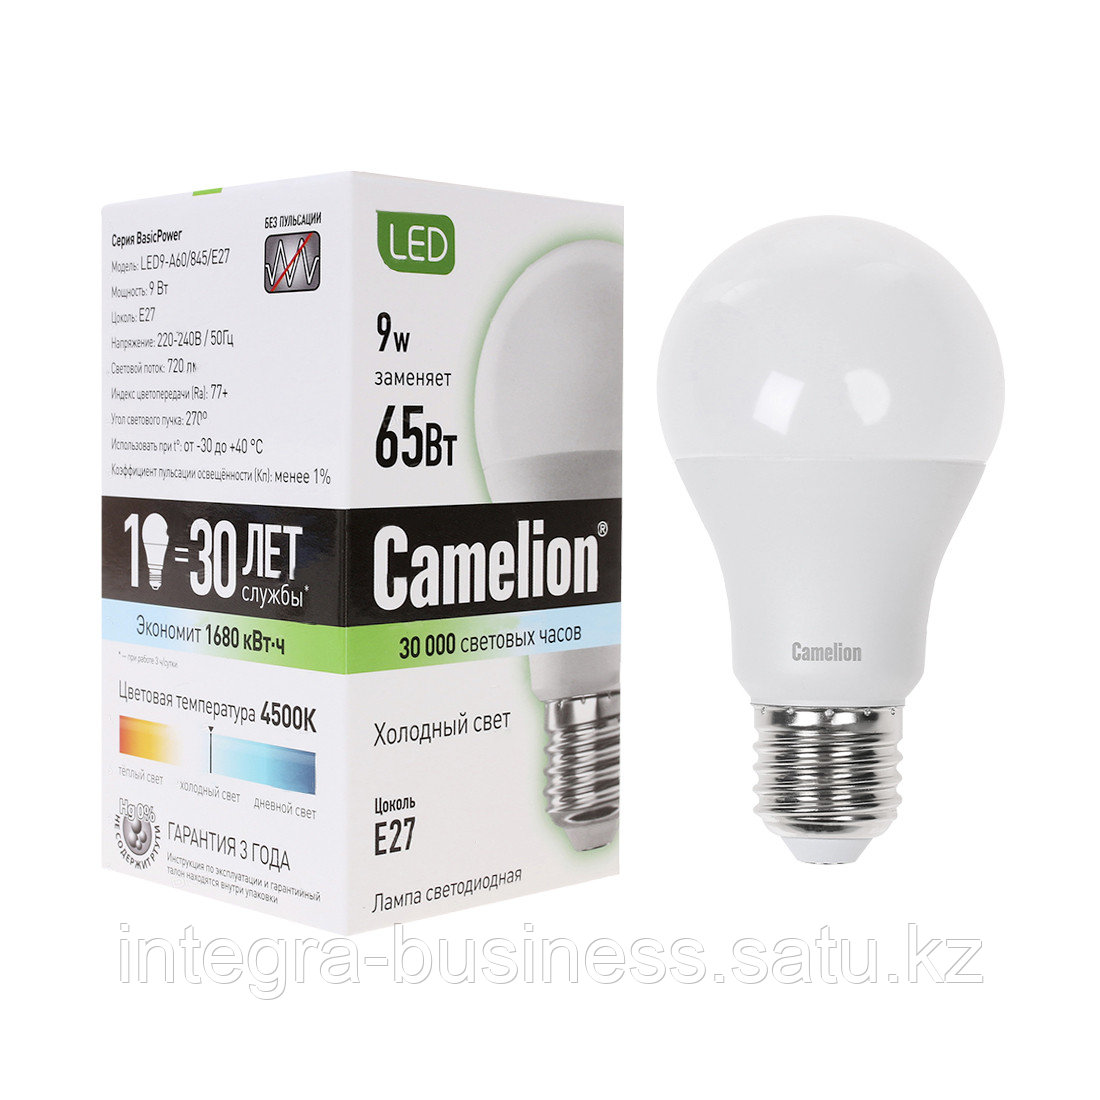 Эл. лампа светодиодная Camelion LED9-A60/845/E27, Холодный